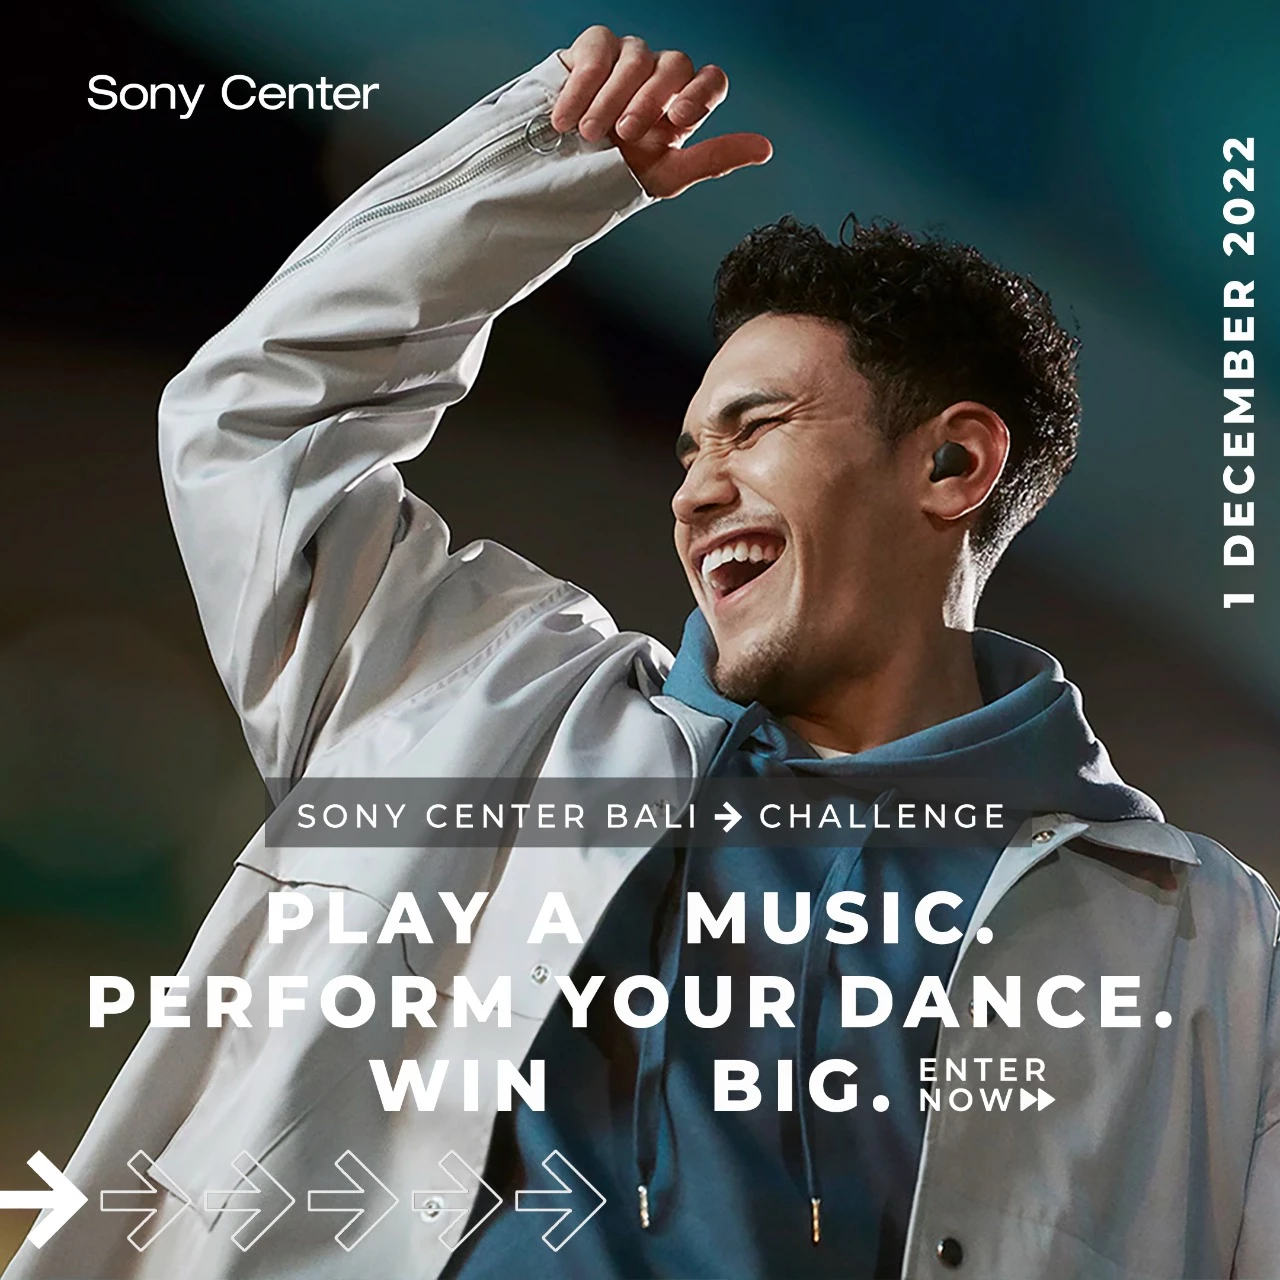 Hai Sahabat Sony Center, Pinter nge Dance dan mau unjuk skill kamu? Yuk ikutan Lomba Dance di Sony Center Bali Challenge. Event ini diselenggarakan spesial untuk menyambut Grand Opening Sony Center Bali.